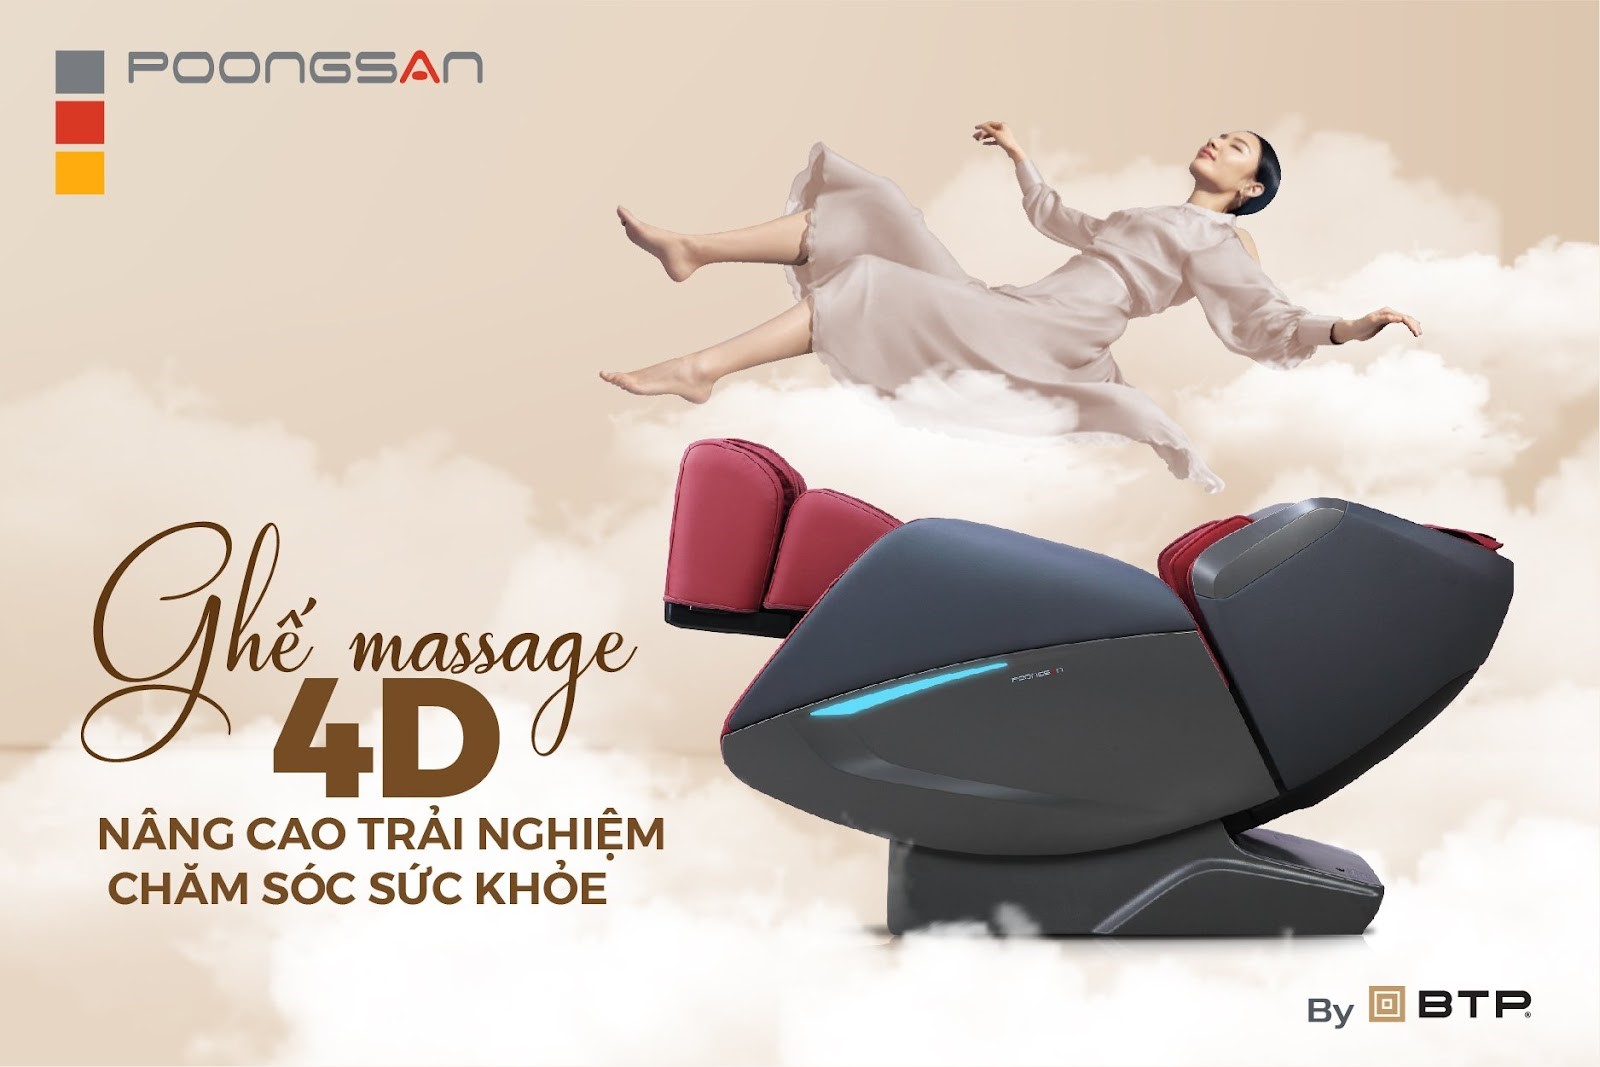 Ghế massage 4D - Nâng cao trải nghiệm chăm sóc sức khỏe - 1